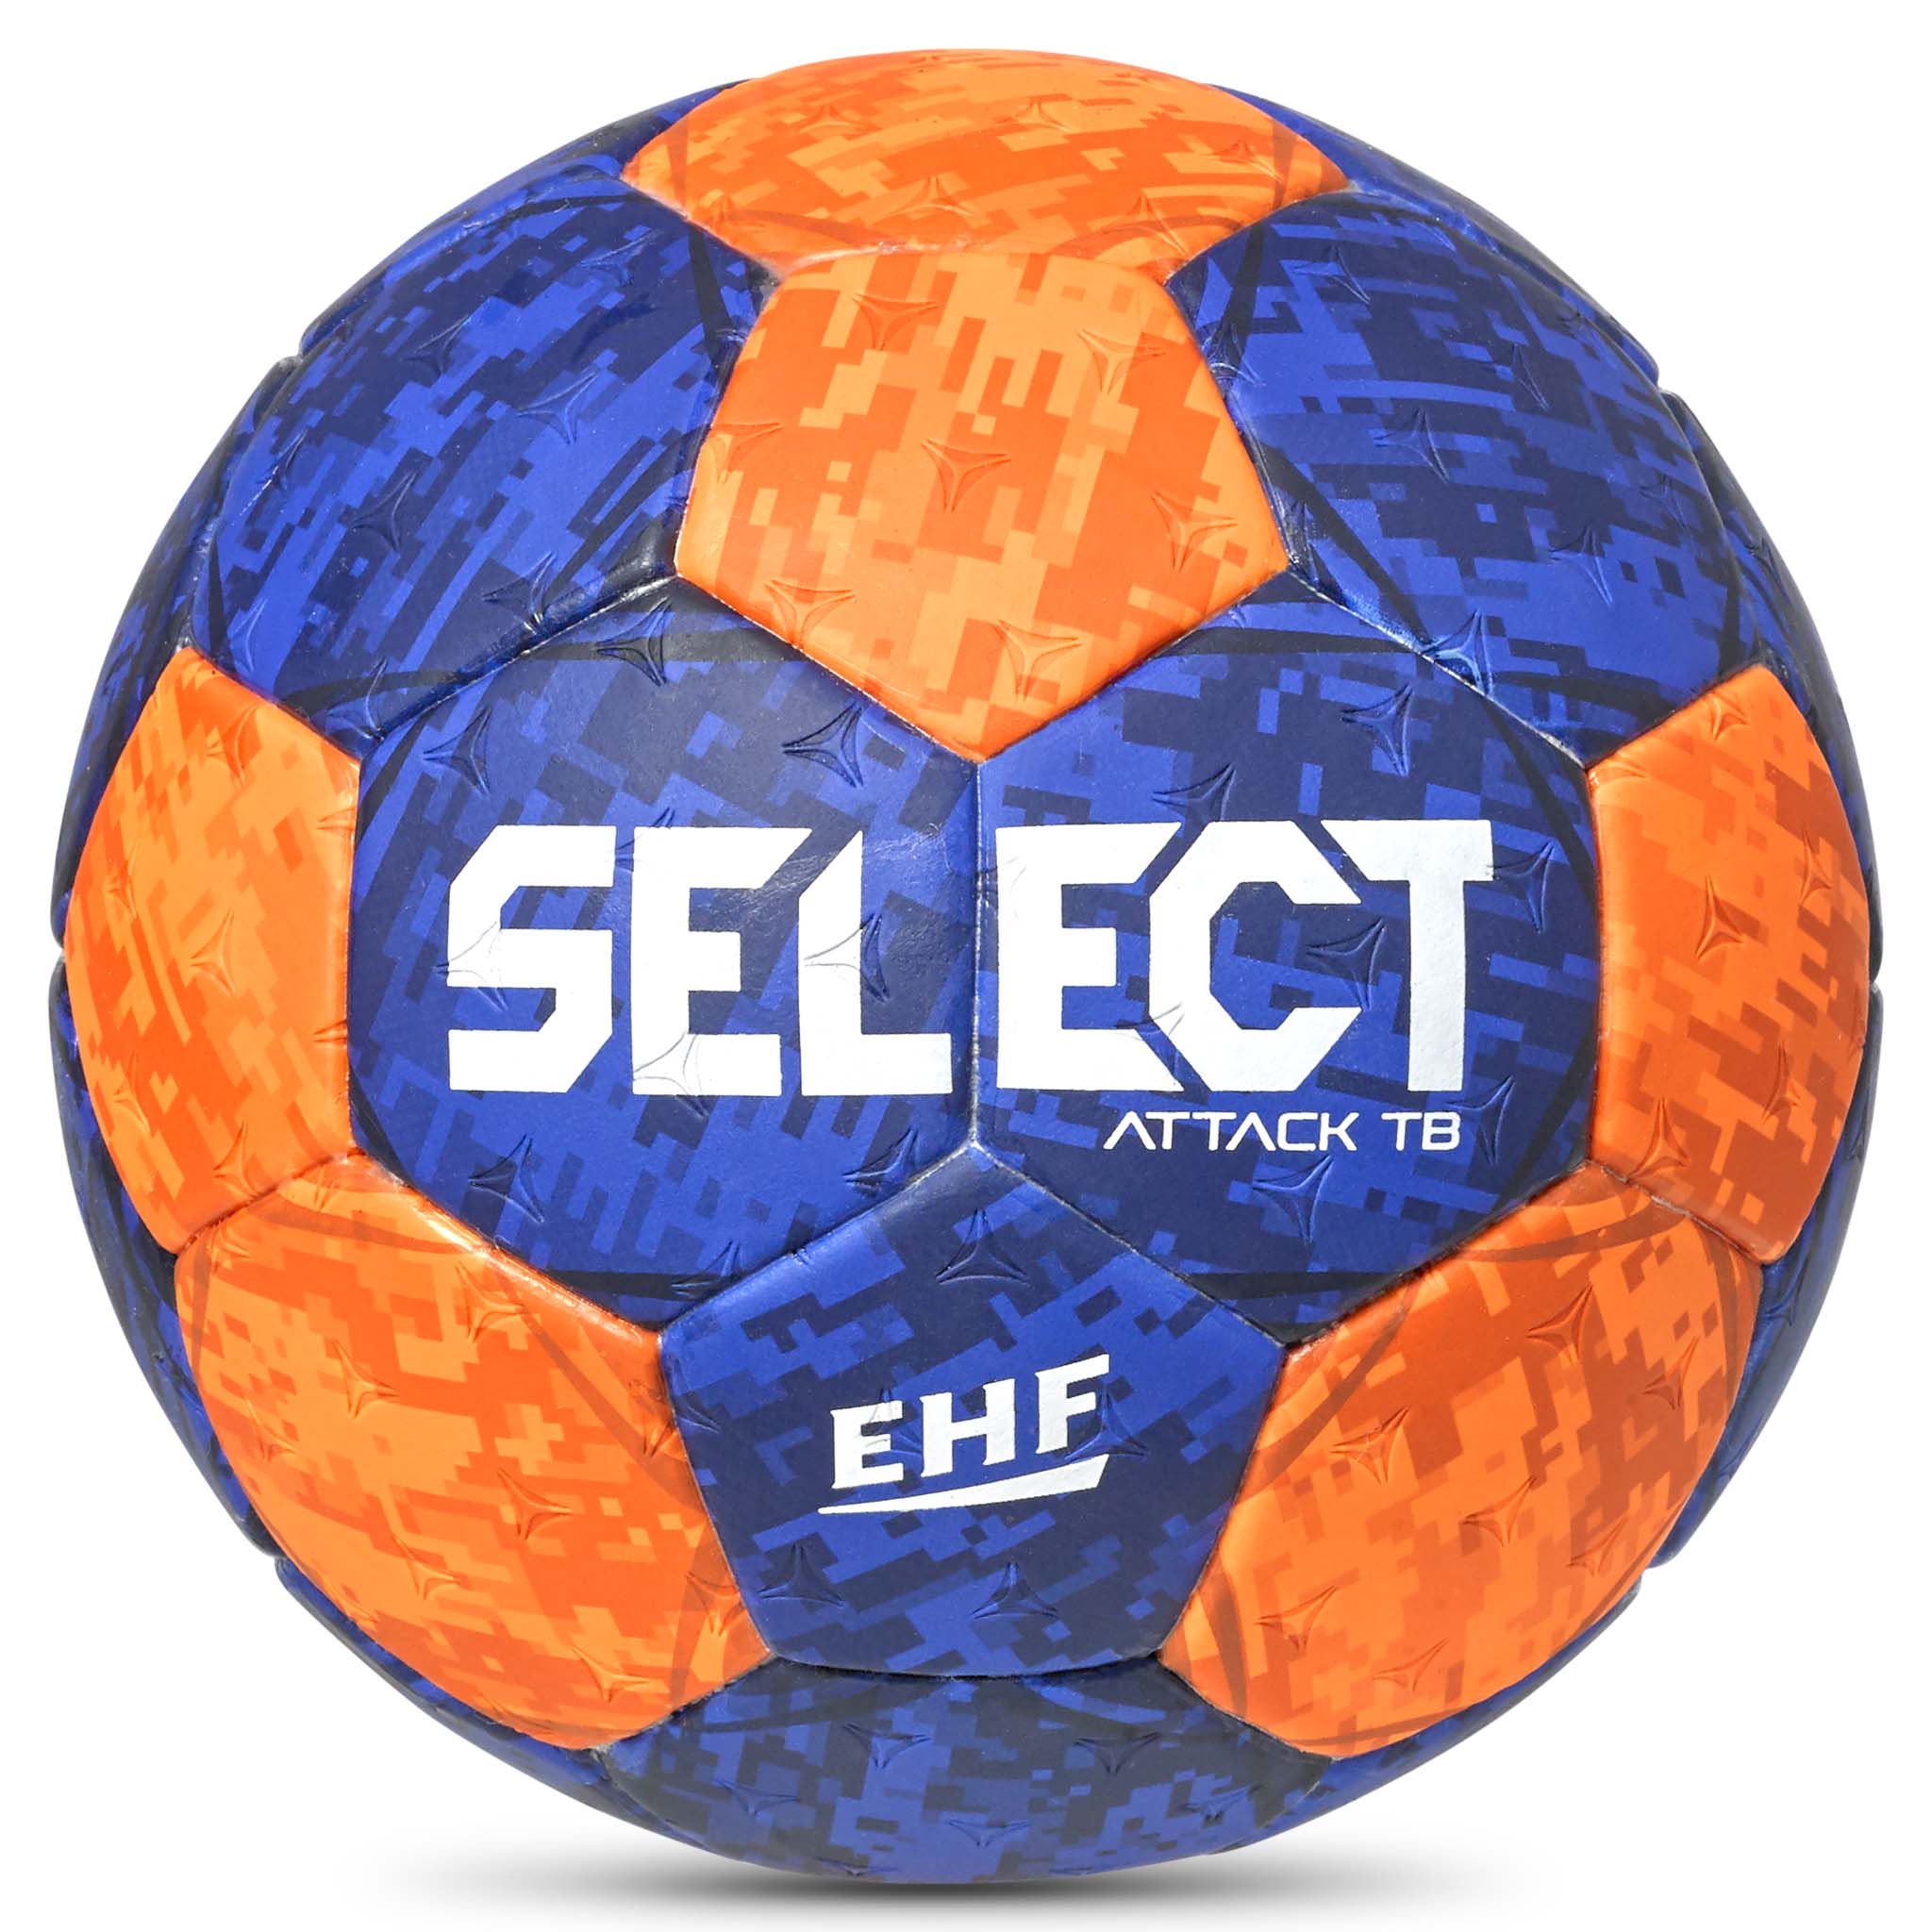 Das Produkt erfreut sich großer Beliebtheit Handball - Solera